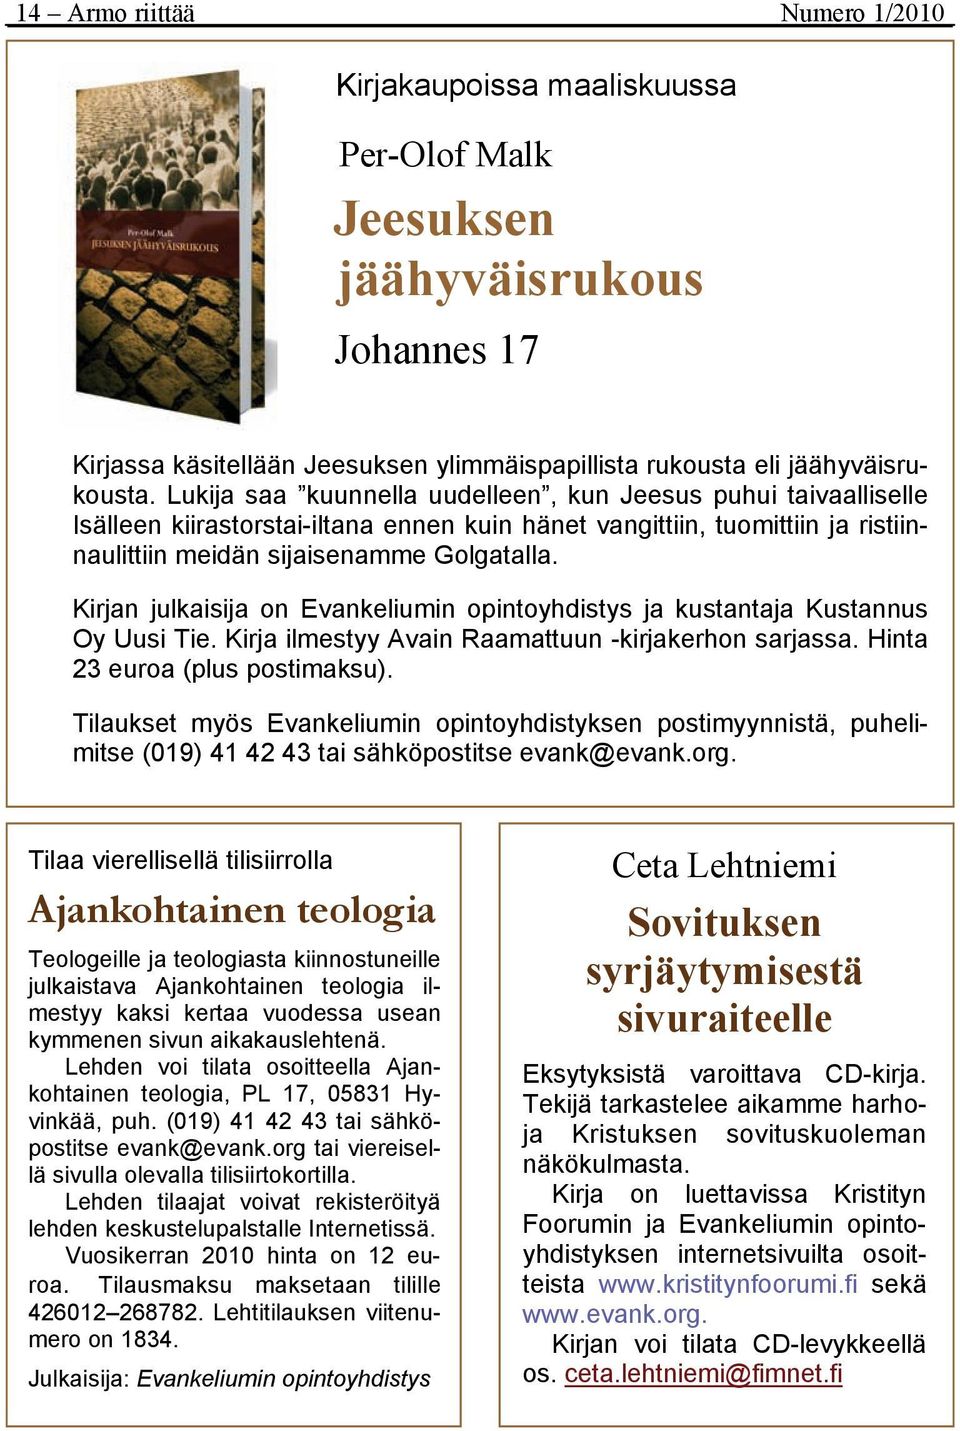 Kirjan julkaisija on Evankeliumin opintoyhdistys ja kustantaja Kustannus Oy Uusi Tie. Kirja ilmestyy Avain Raamattuun -kirjakerhon sarjassa. Hinta 23 euroa (plus postimaksu).